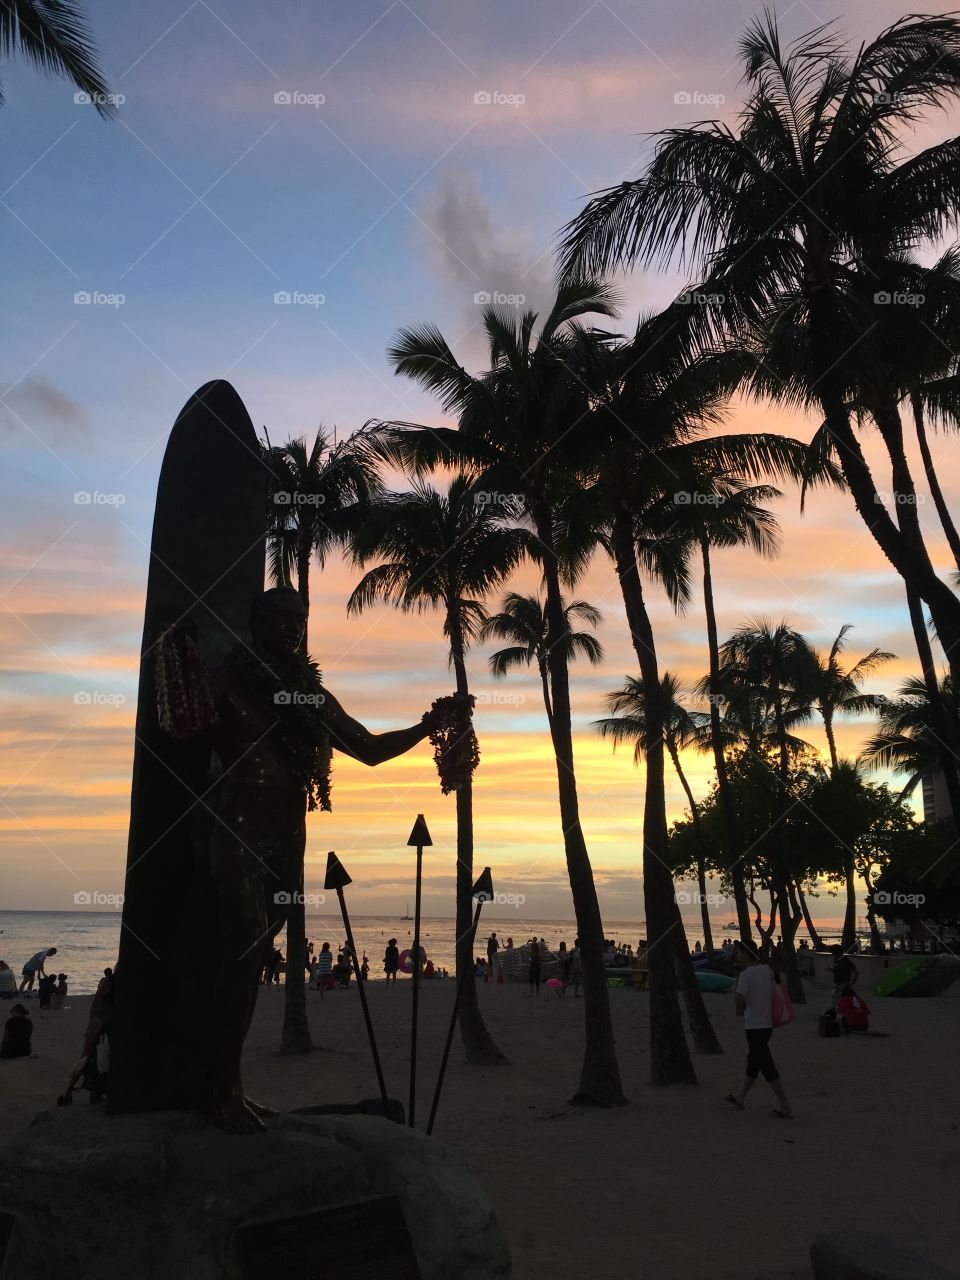 Blessing of Duke in Waikiki at sunset 